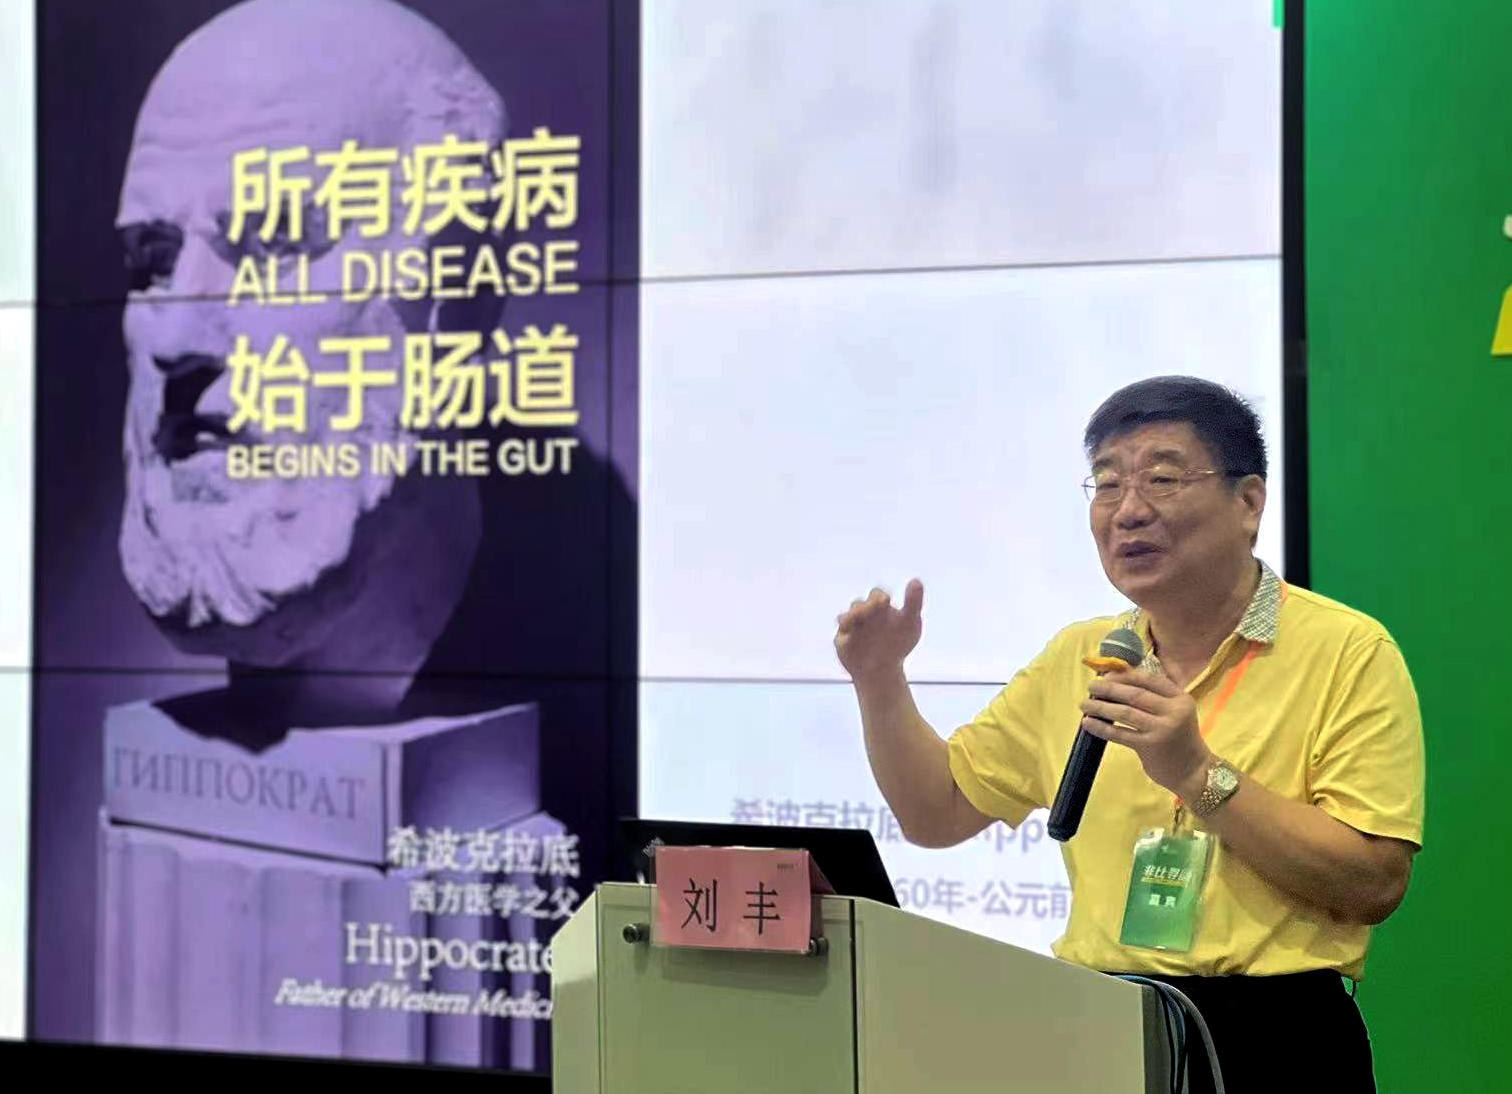 刘丰教授主题报告《消化道肿瘤的防治经验》